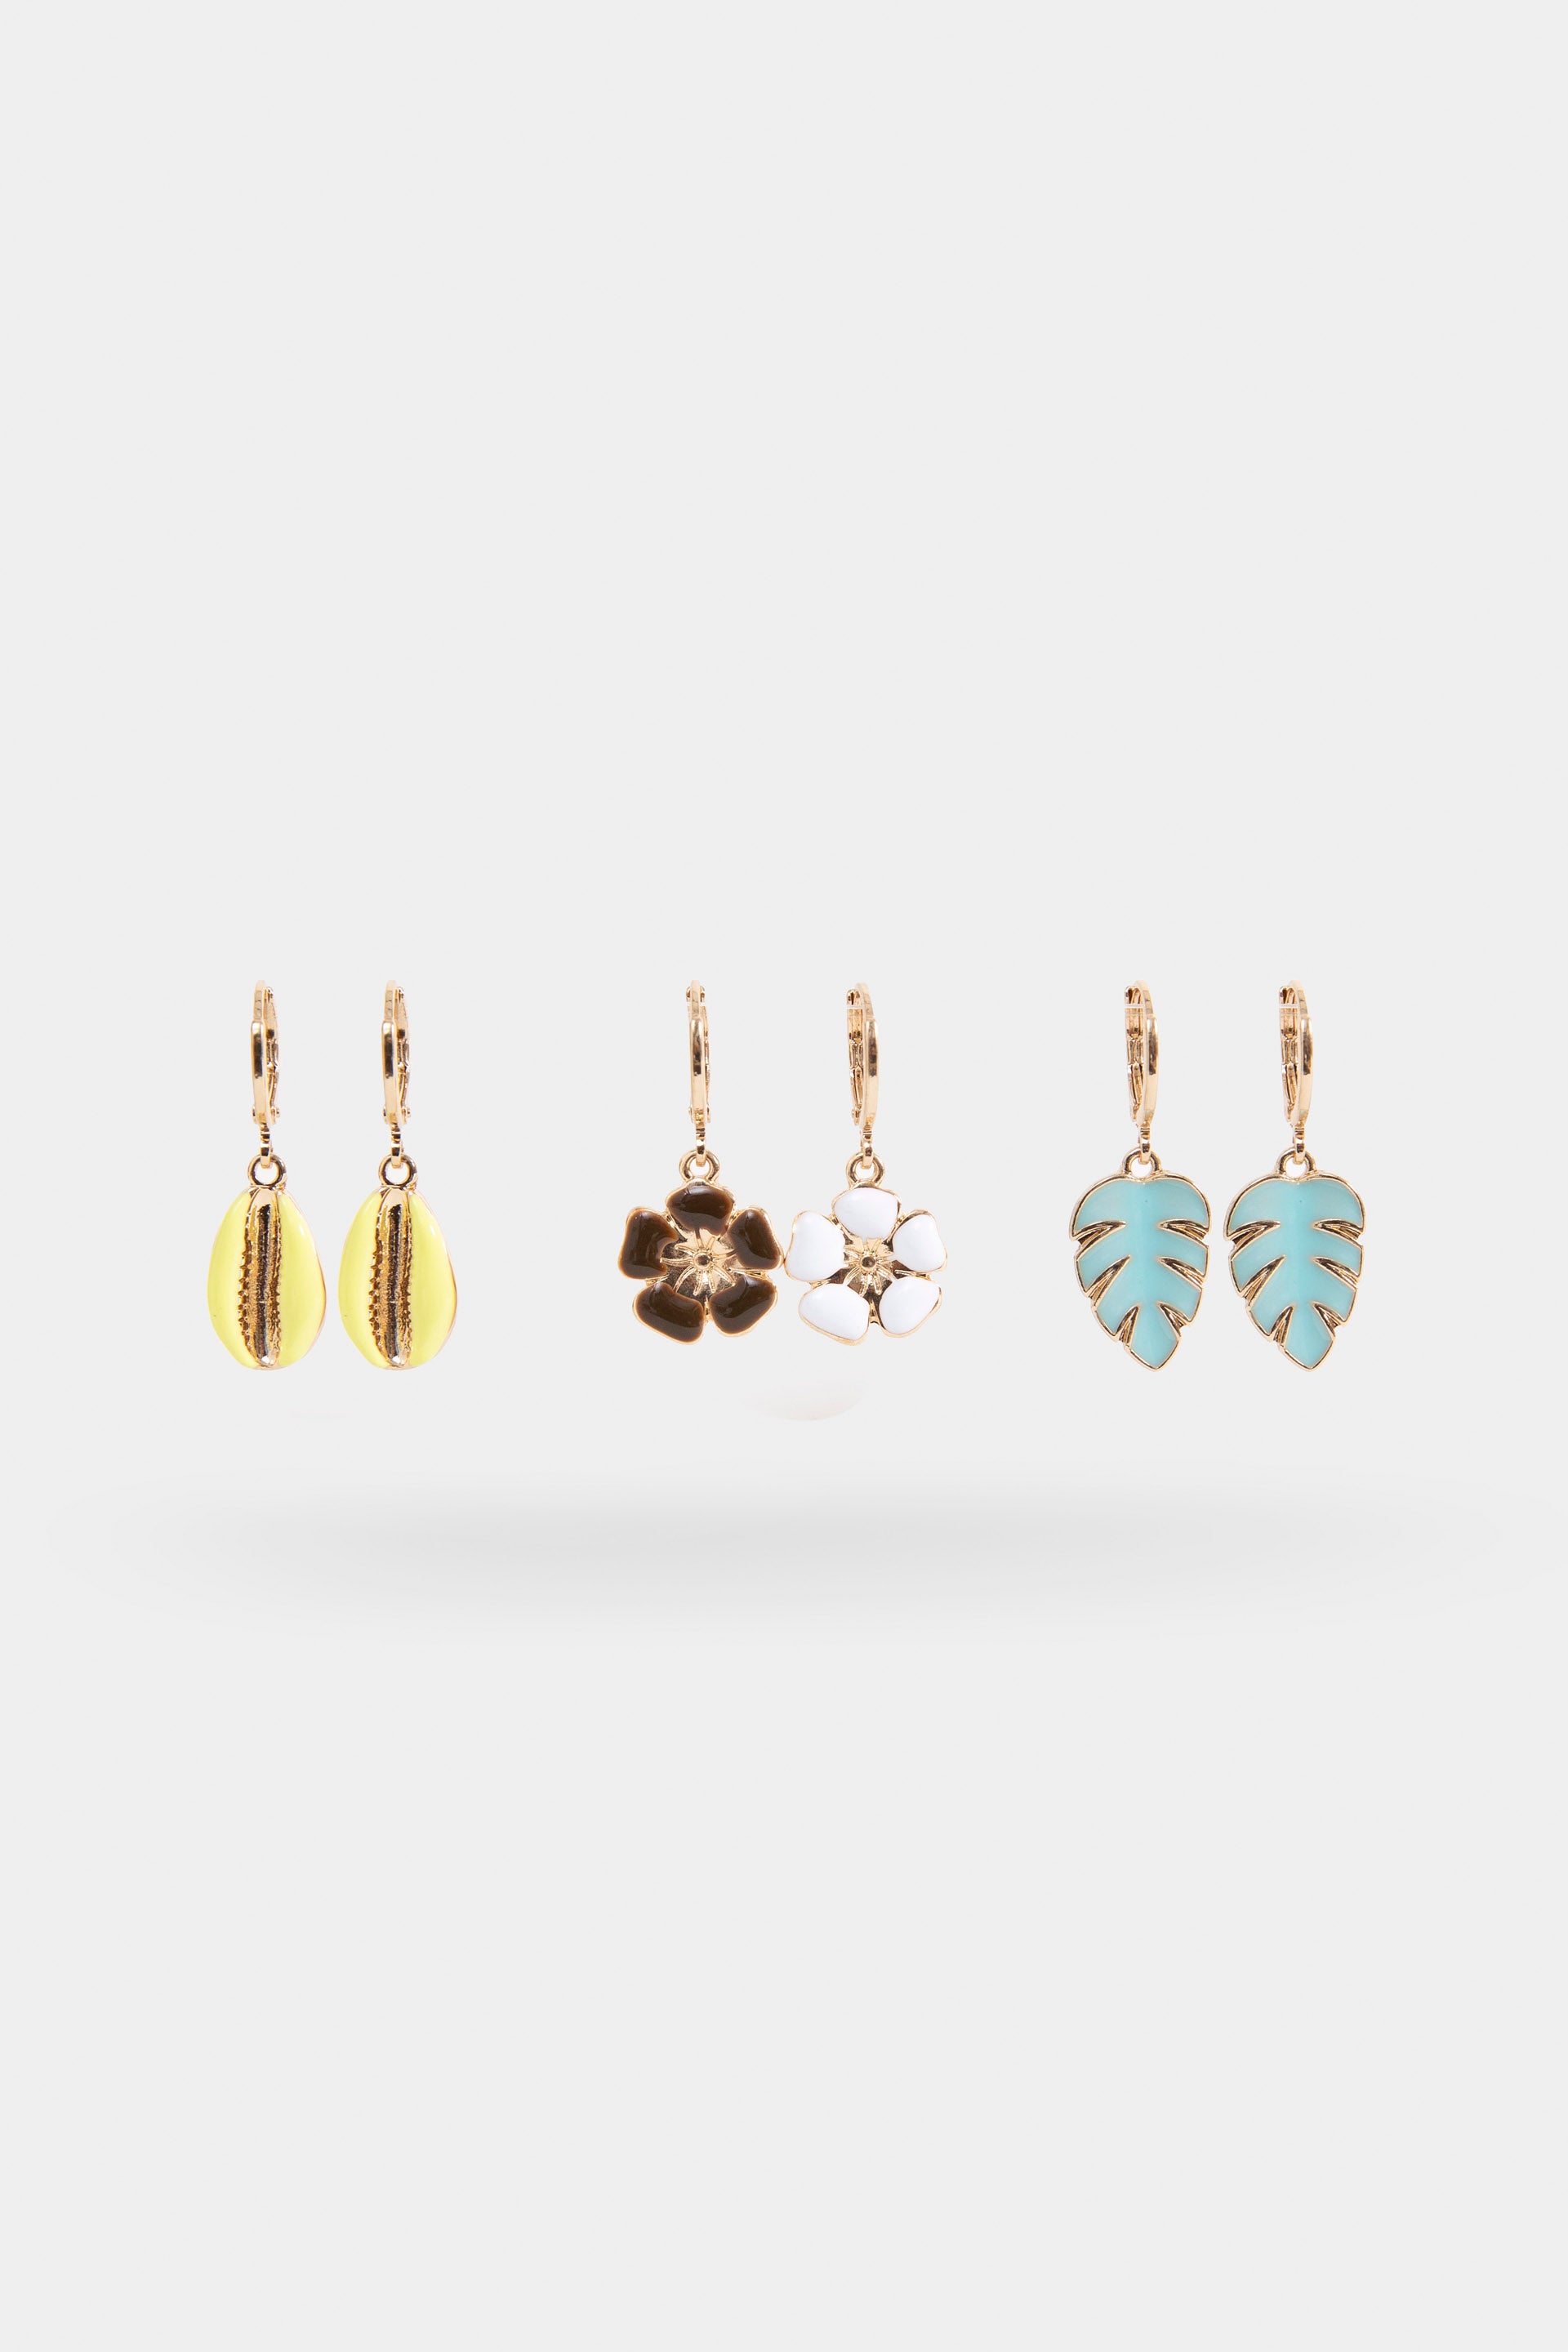 Pack of 3-dangling earrings